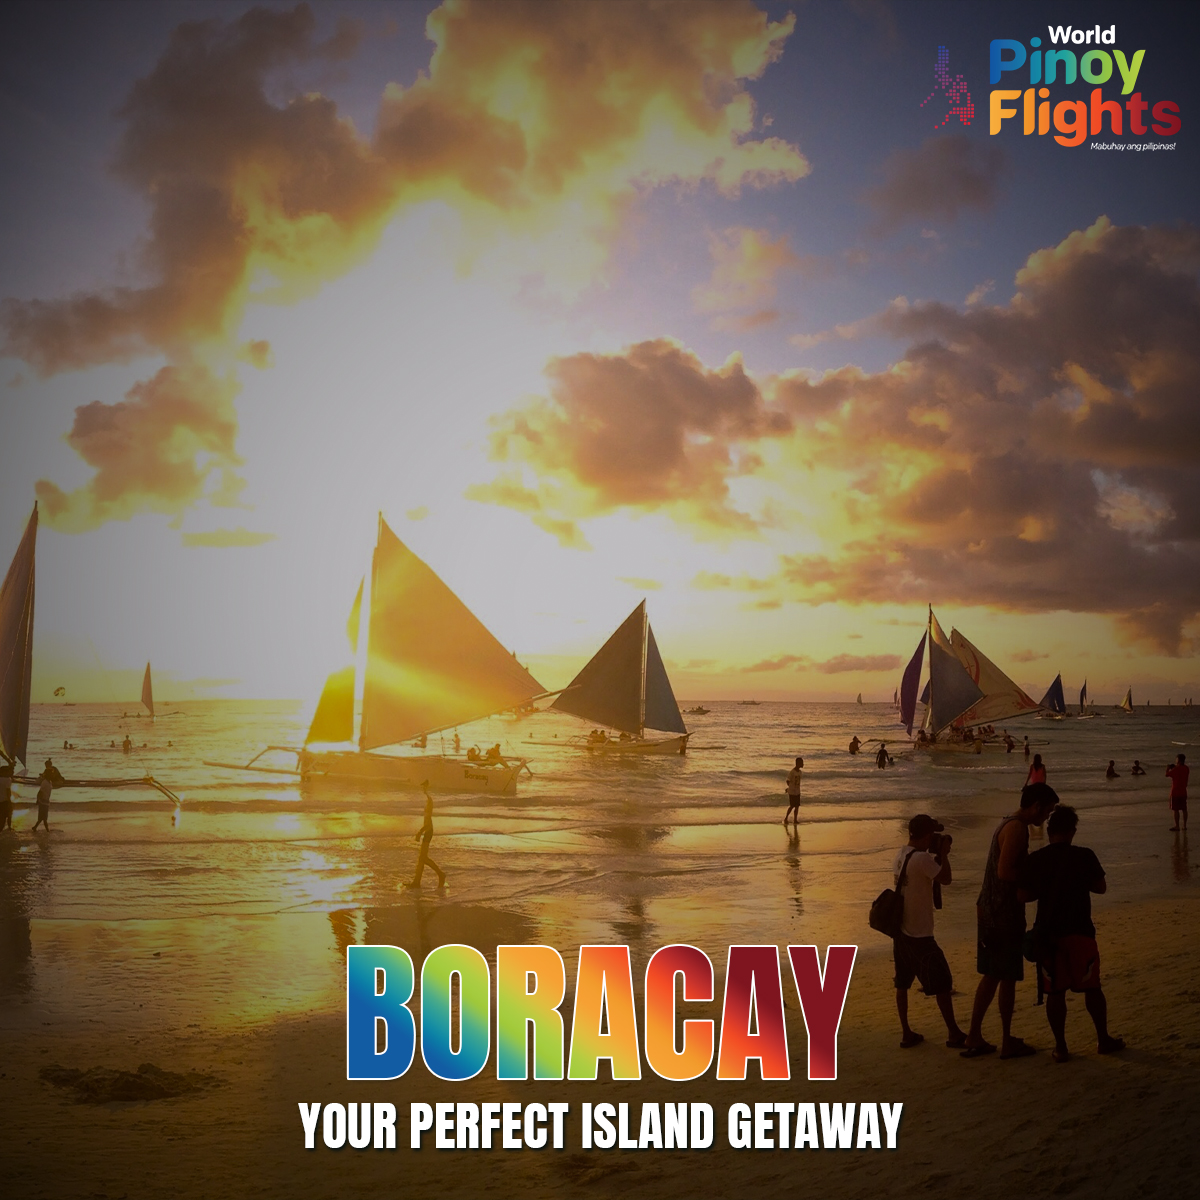 Painting the sky with hues of gold and orange, another breathtaking Boracay sunset to cherish. 🌅💛 #BoracayBliss #SunsetMagic #IslandLife #worldpinoyflights #travelph #ukholidays #Philippines